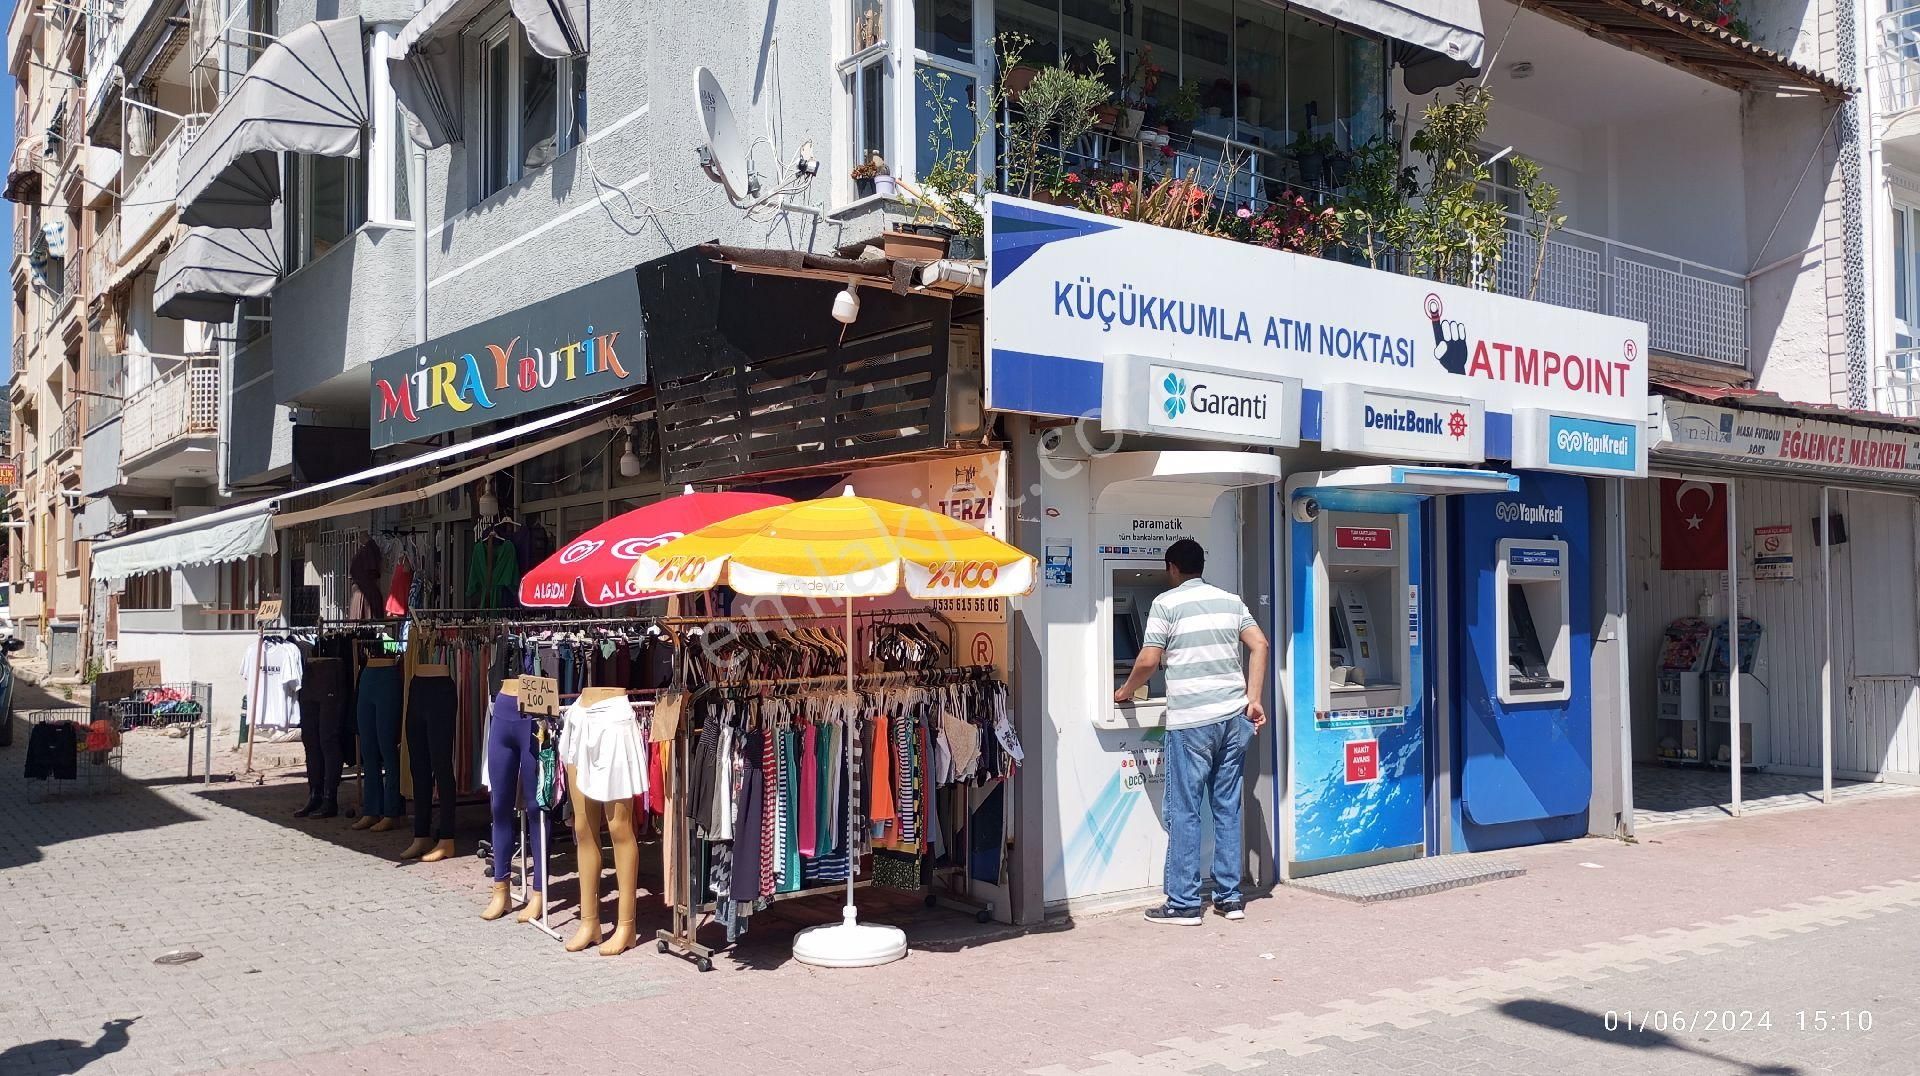 Gemlik Kumla Satılık Dükkan & Mağaza Fatih'ten küçükkumla sahilde 56m2 deniz manzaralı sahile cephe hazır kiracılı  wc li satılık dükkan